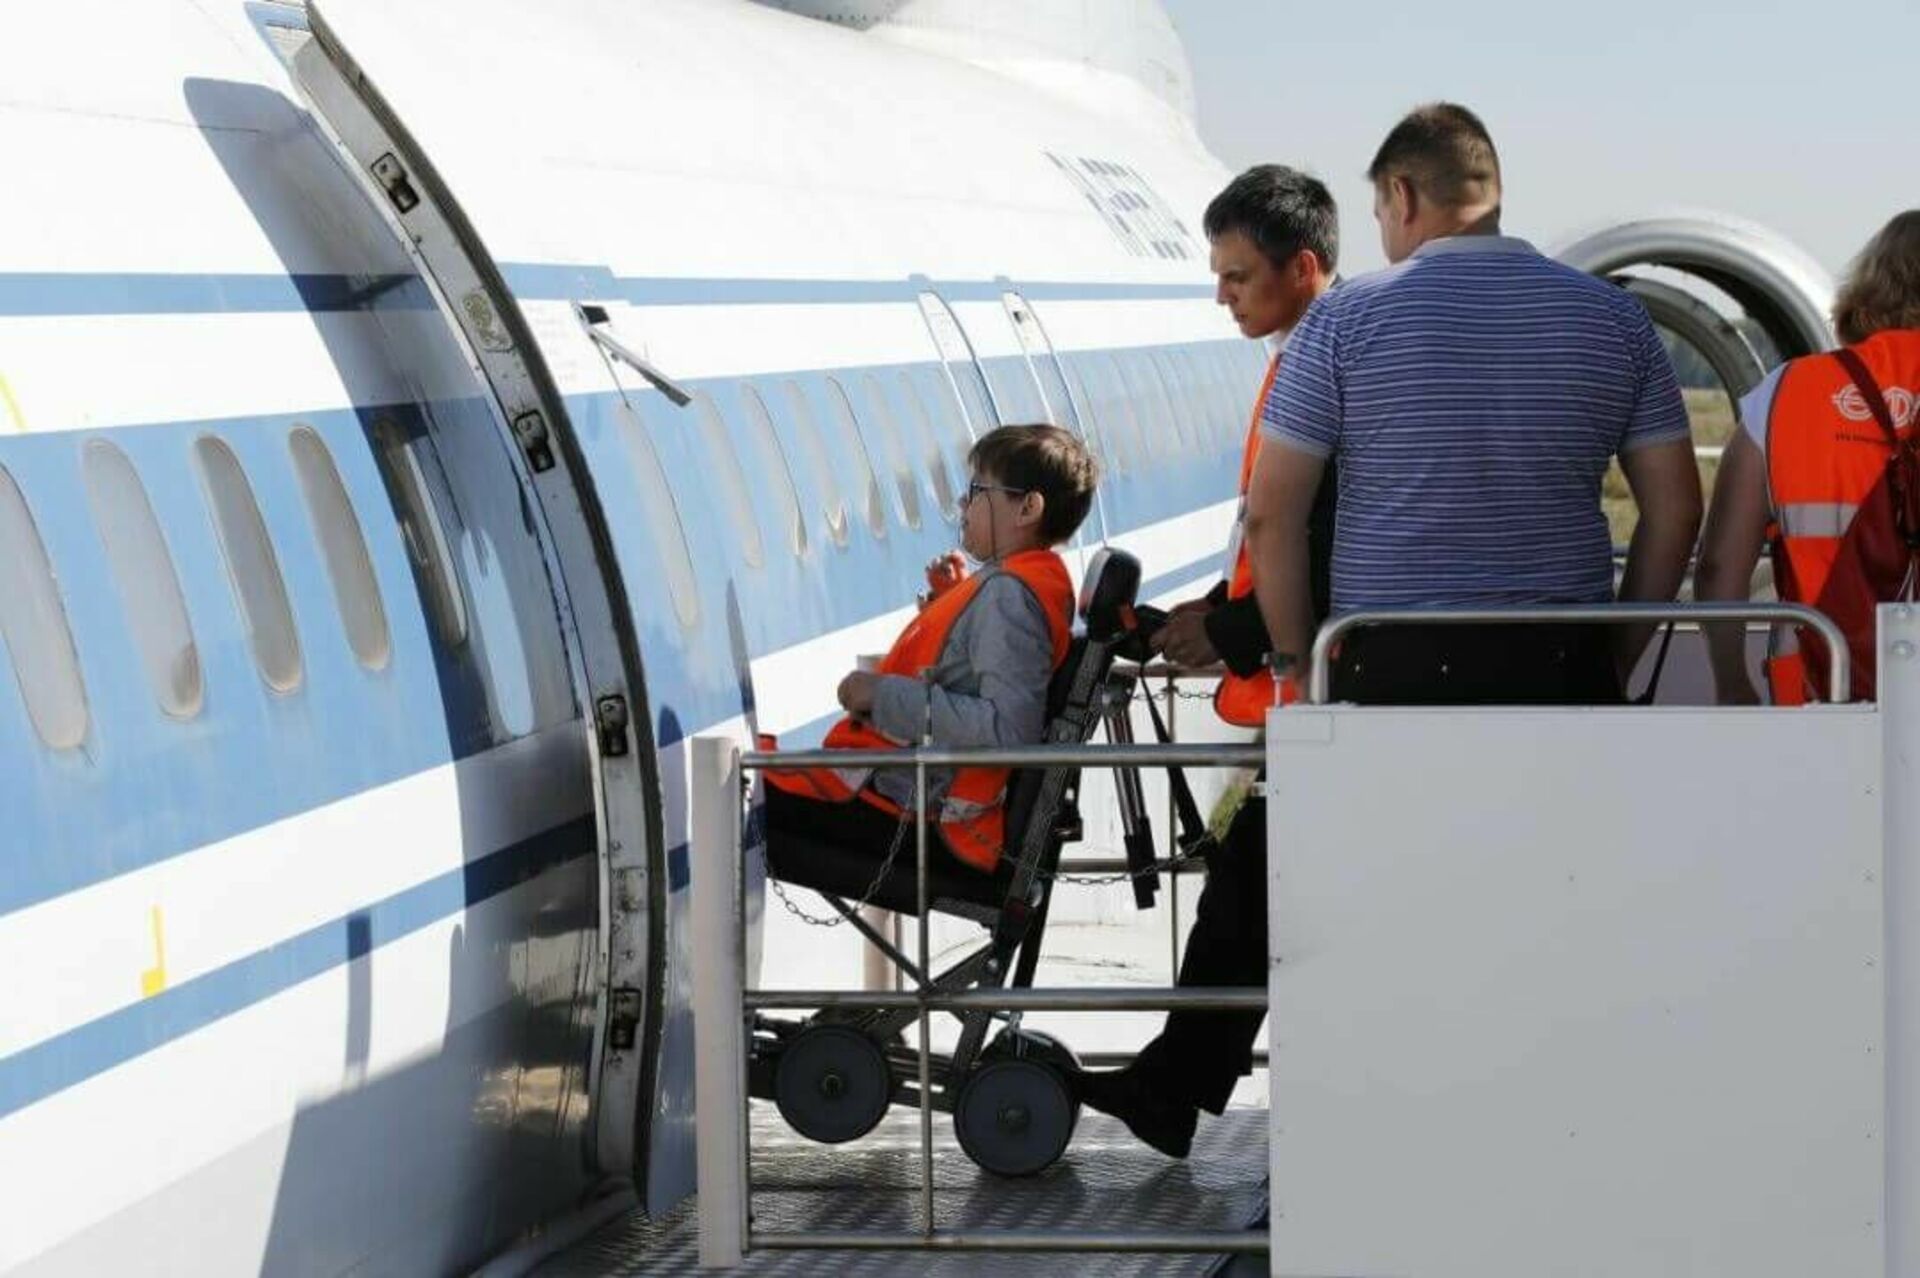 Посадка людей в самолет. Инвалид в самолете. Авиатранспорт для инвалидов. Маломобильные пасжиры в аэрлопорт. Места для инвалидов в самолете.